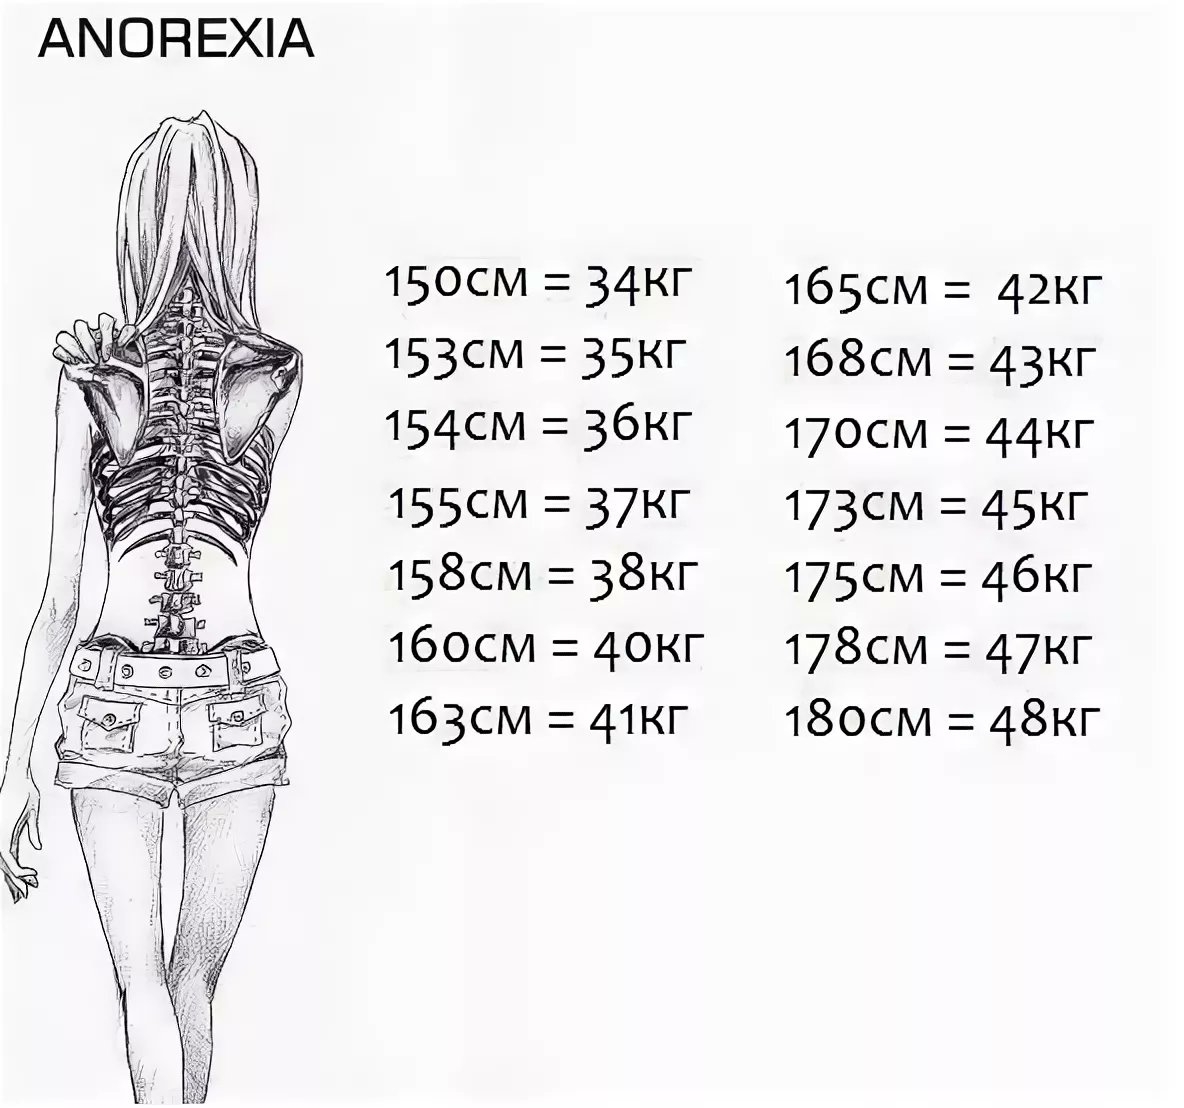 Анорексия вес и рост. С какого веса начинается анорексия при росте 160. Таблица анорексии рост вес.